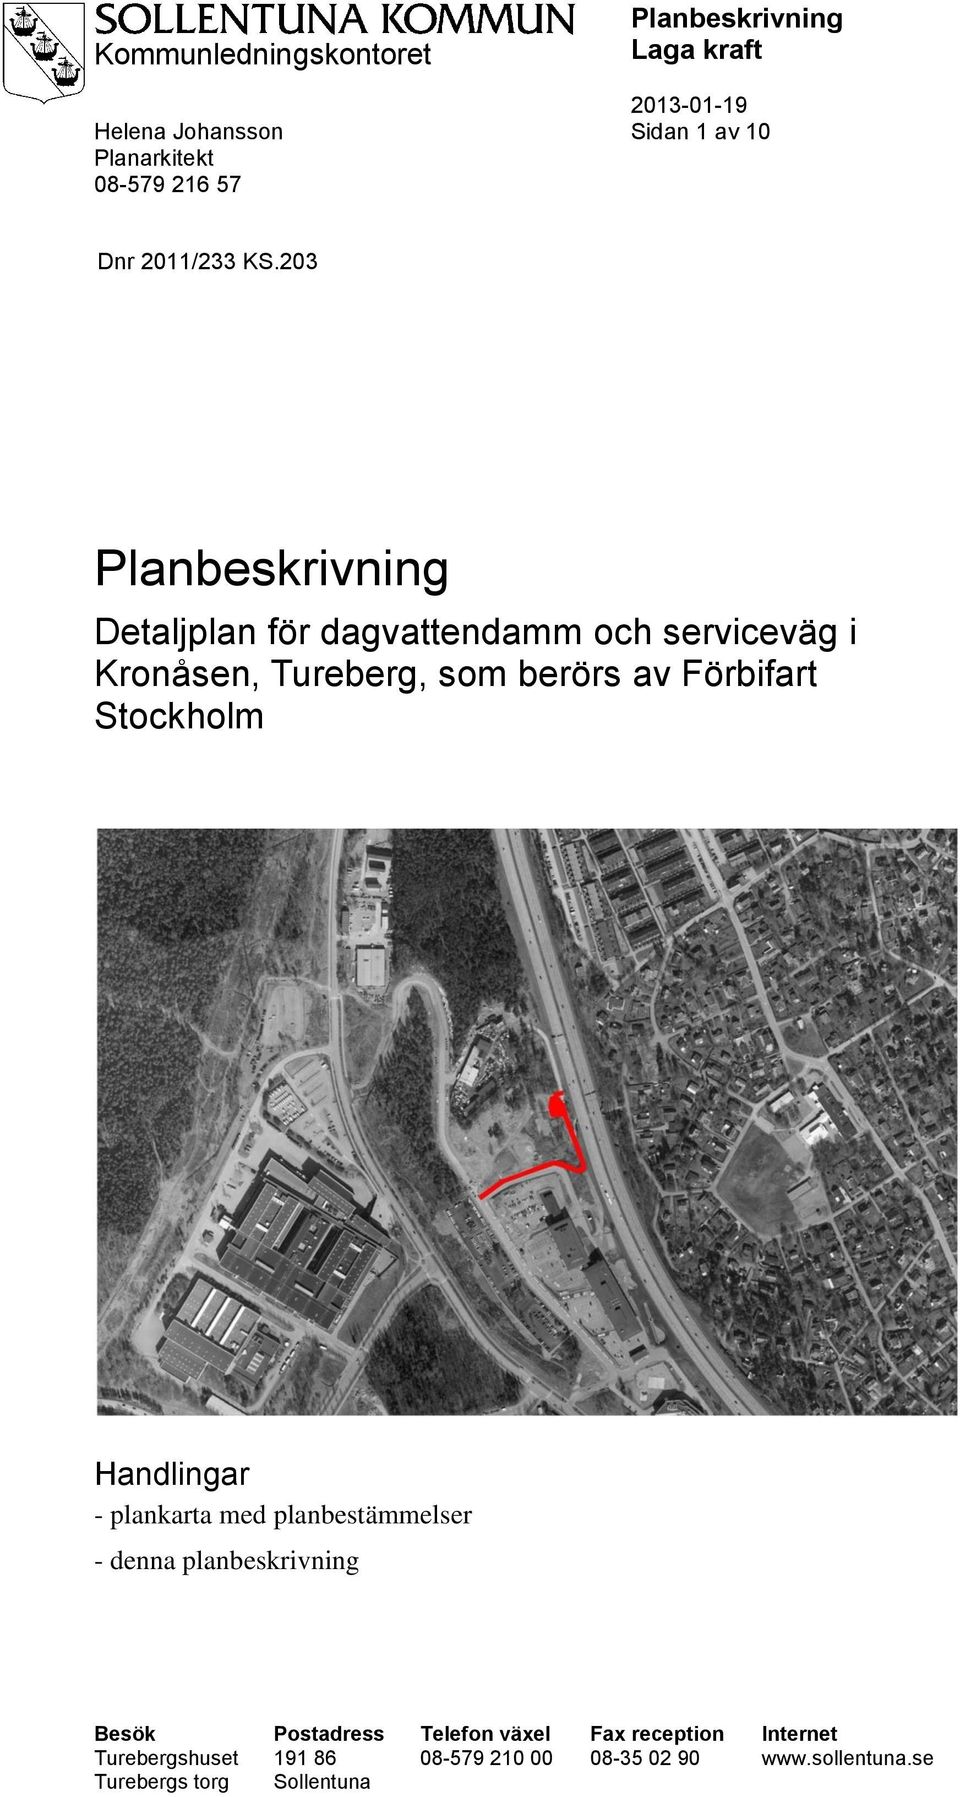 Stockholm Handlingar - plankarta med planbestämmelser - denna planbeskrivning Besök Postadress Telefon